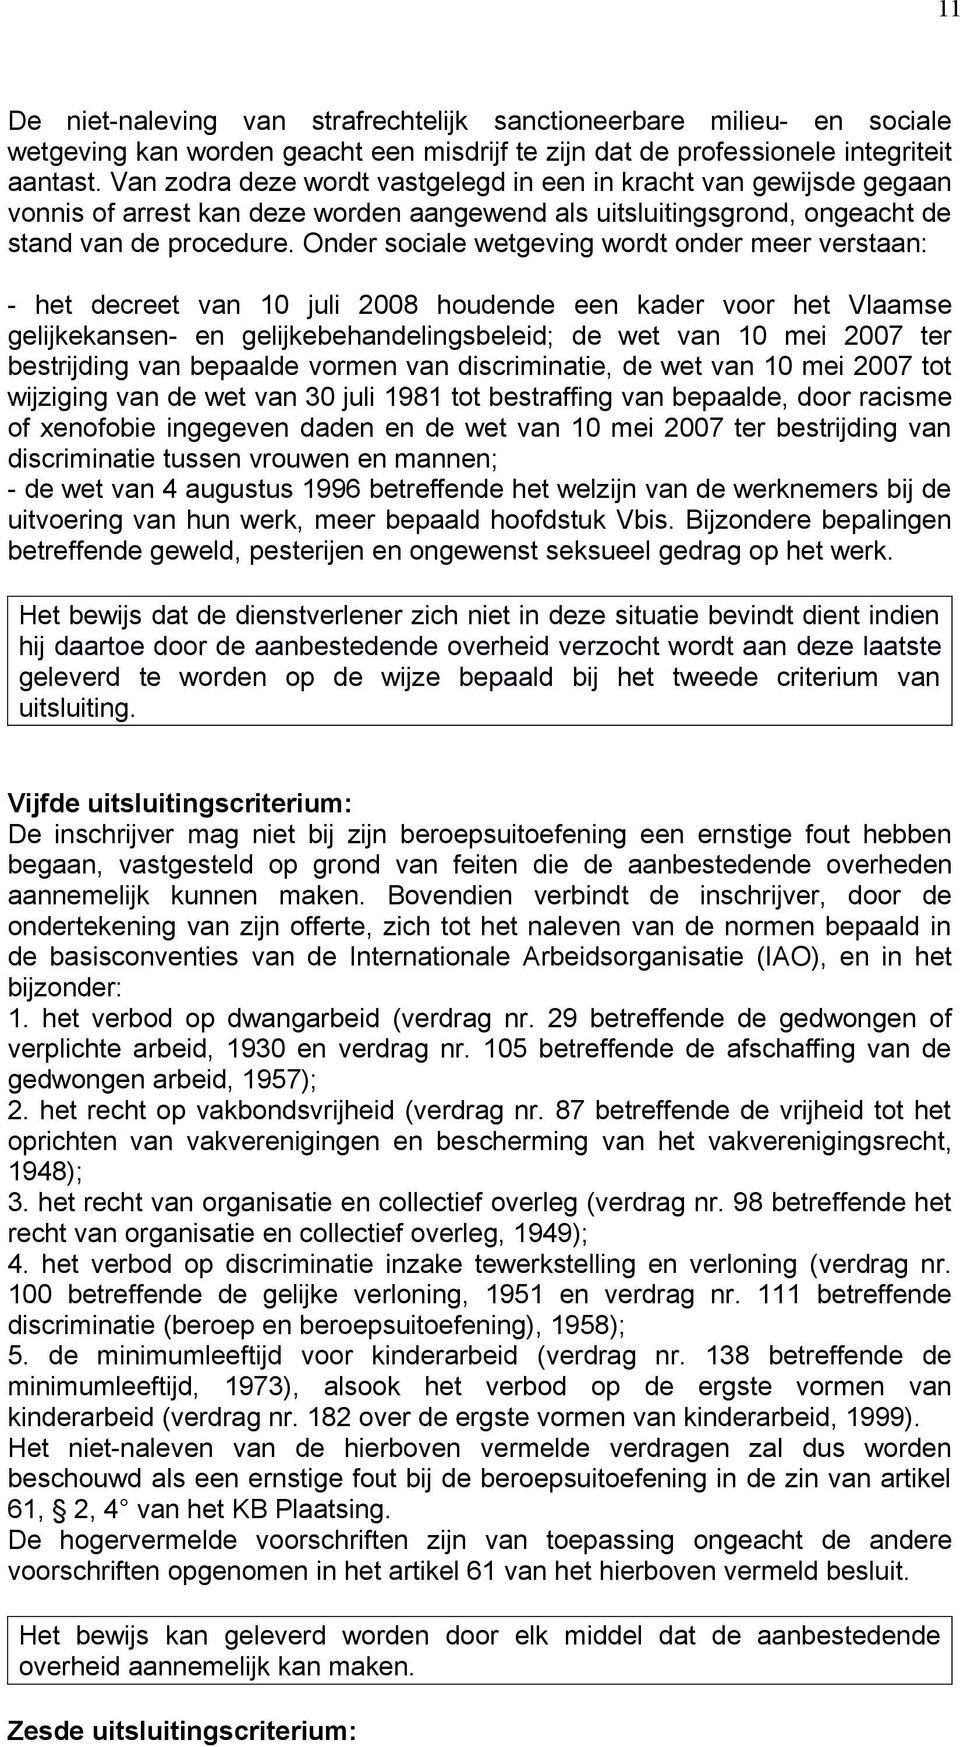 Onder sociale wetgeving wordt onder meer verstaan: - het decreet van 10 juli 2008 houdende een kader voor het Vlaamse gelijkekansen- en gelijkebehandelingsbeleid; de wet van 10 mei 2007 ter